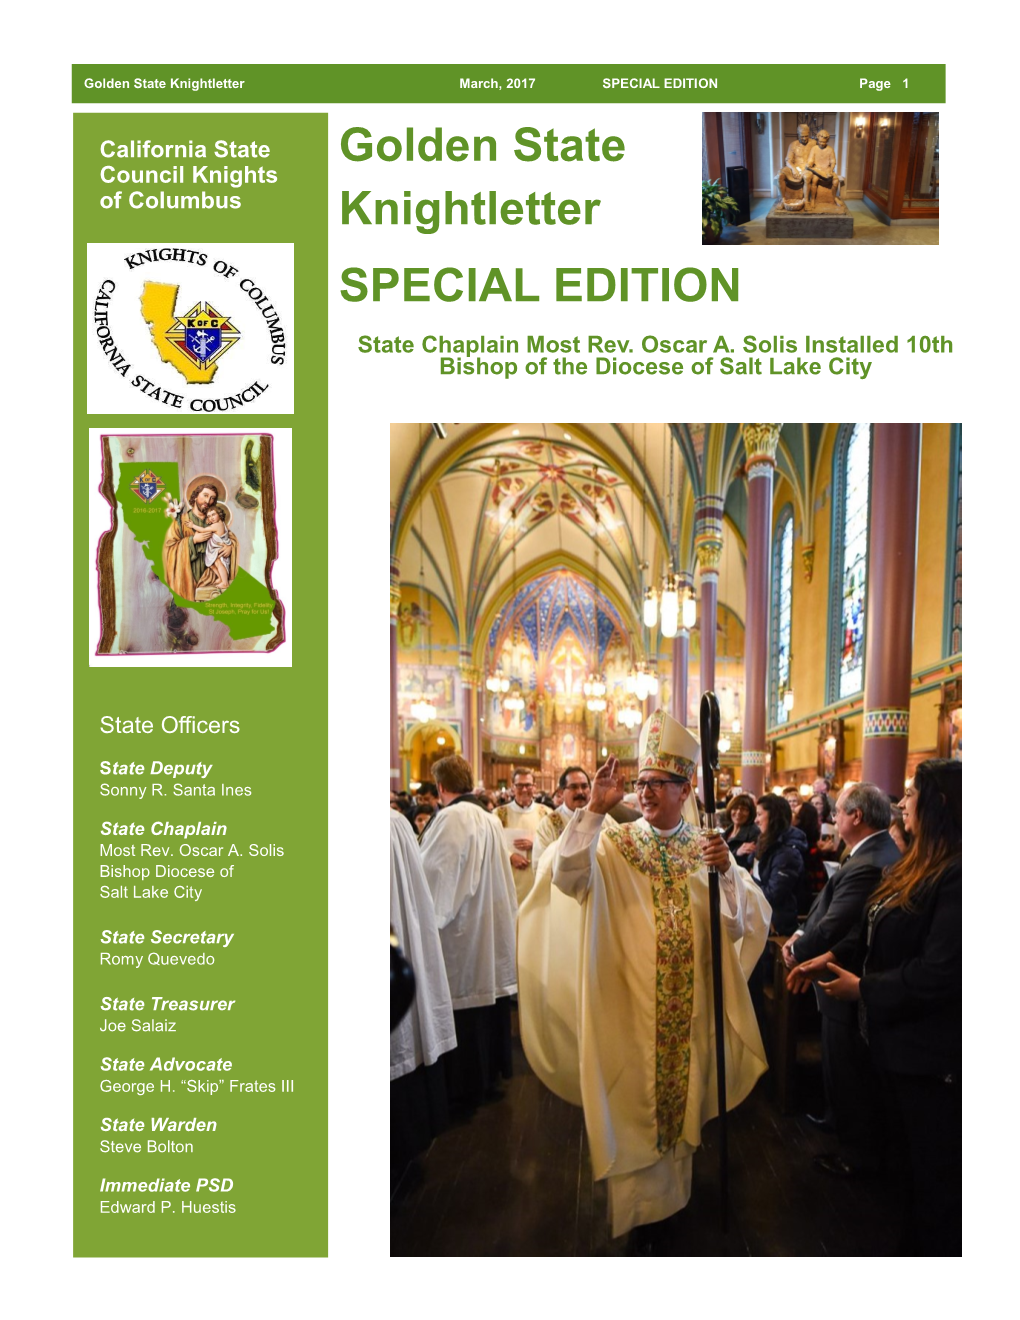 Special Edition Bishop Solis